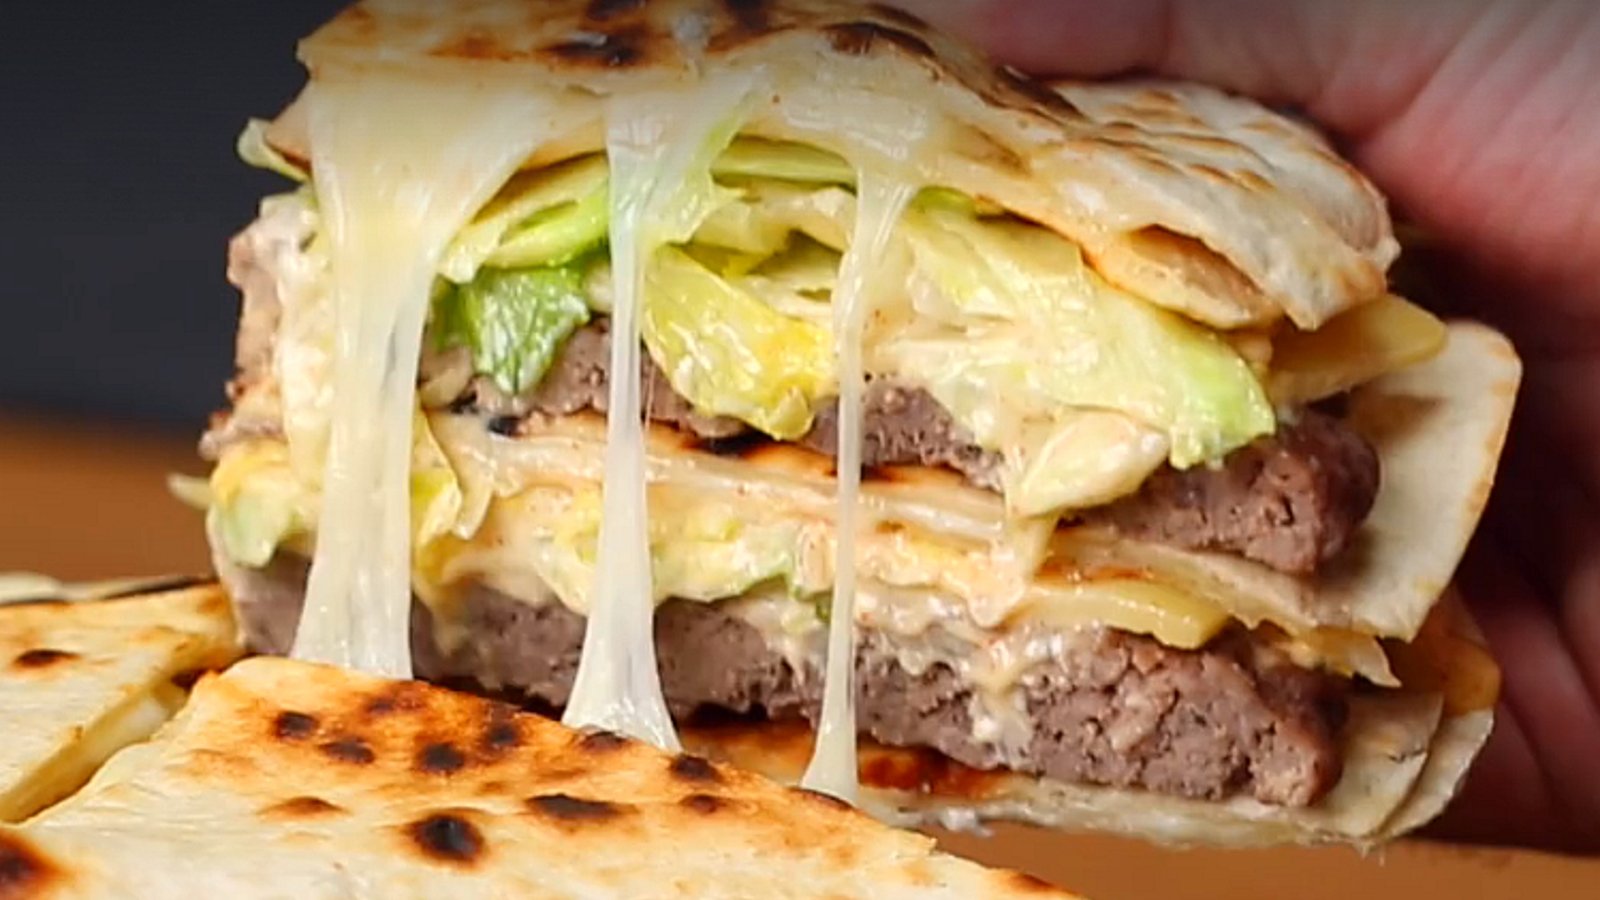 Remplacez le pain par des tortillas dans ce Big Mac géant débordant de saveurs